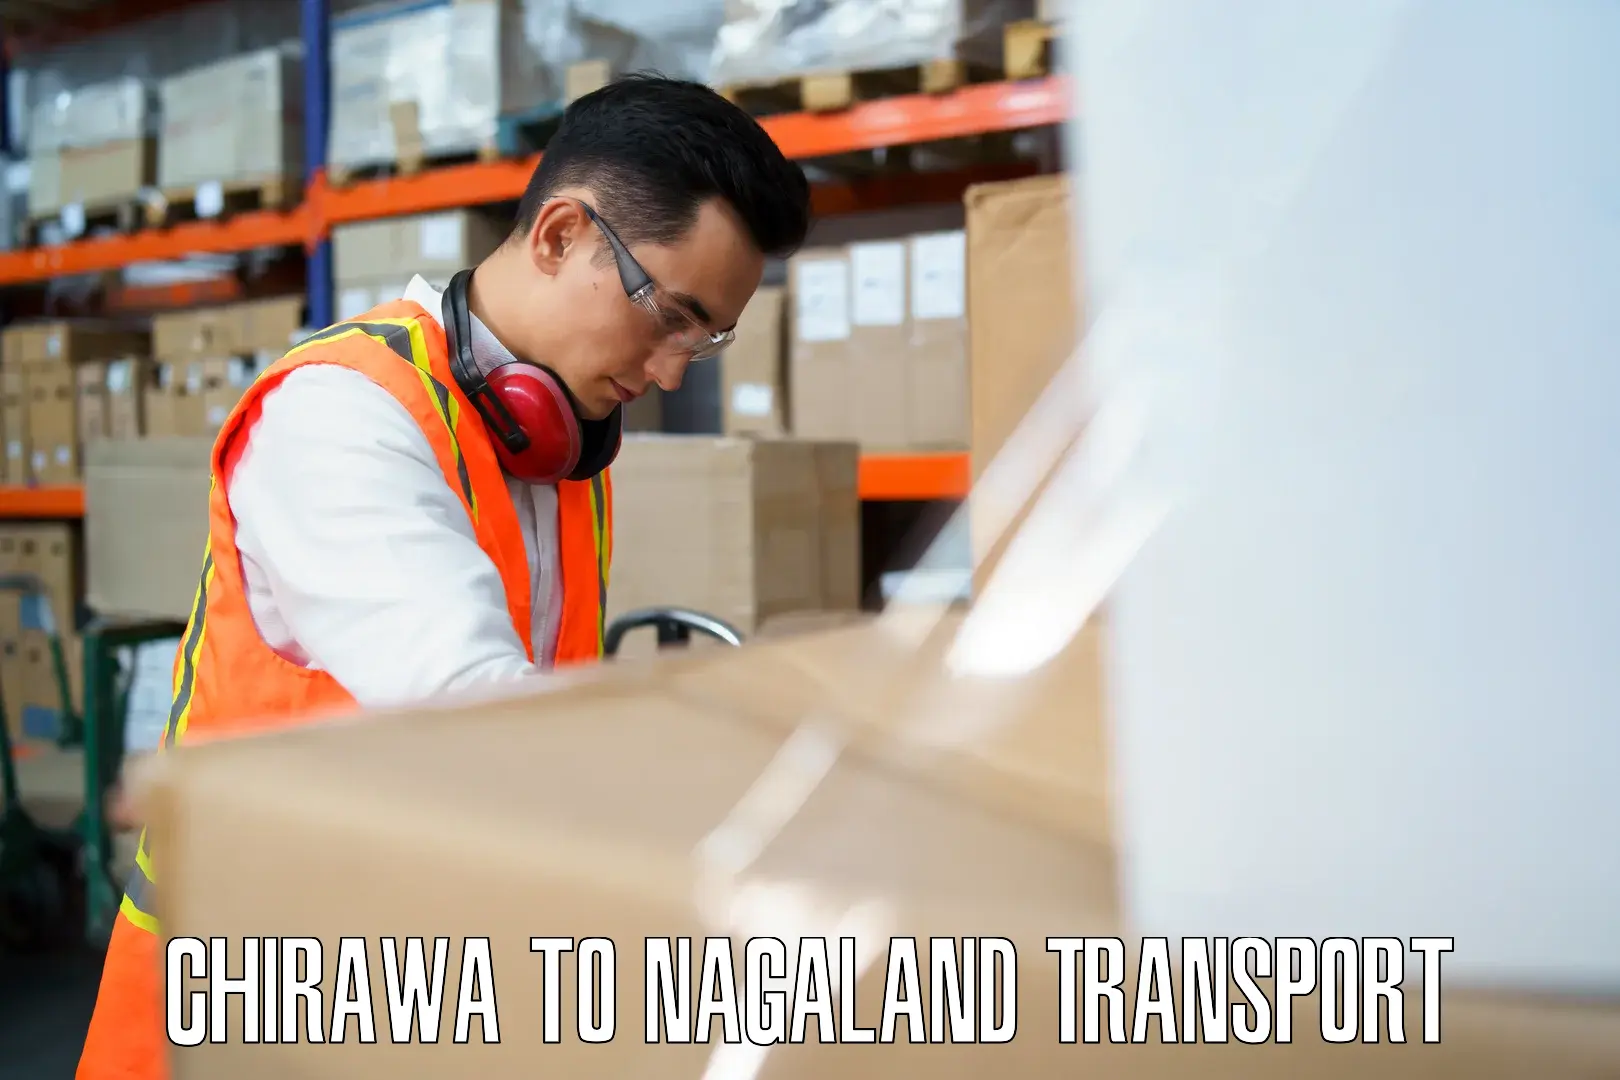 Nearest transport service Chirawa to Nagaland